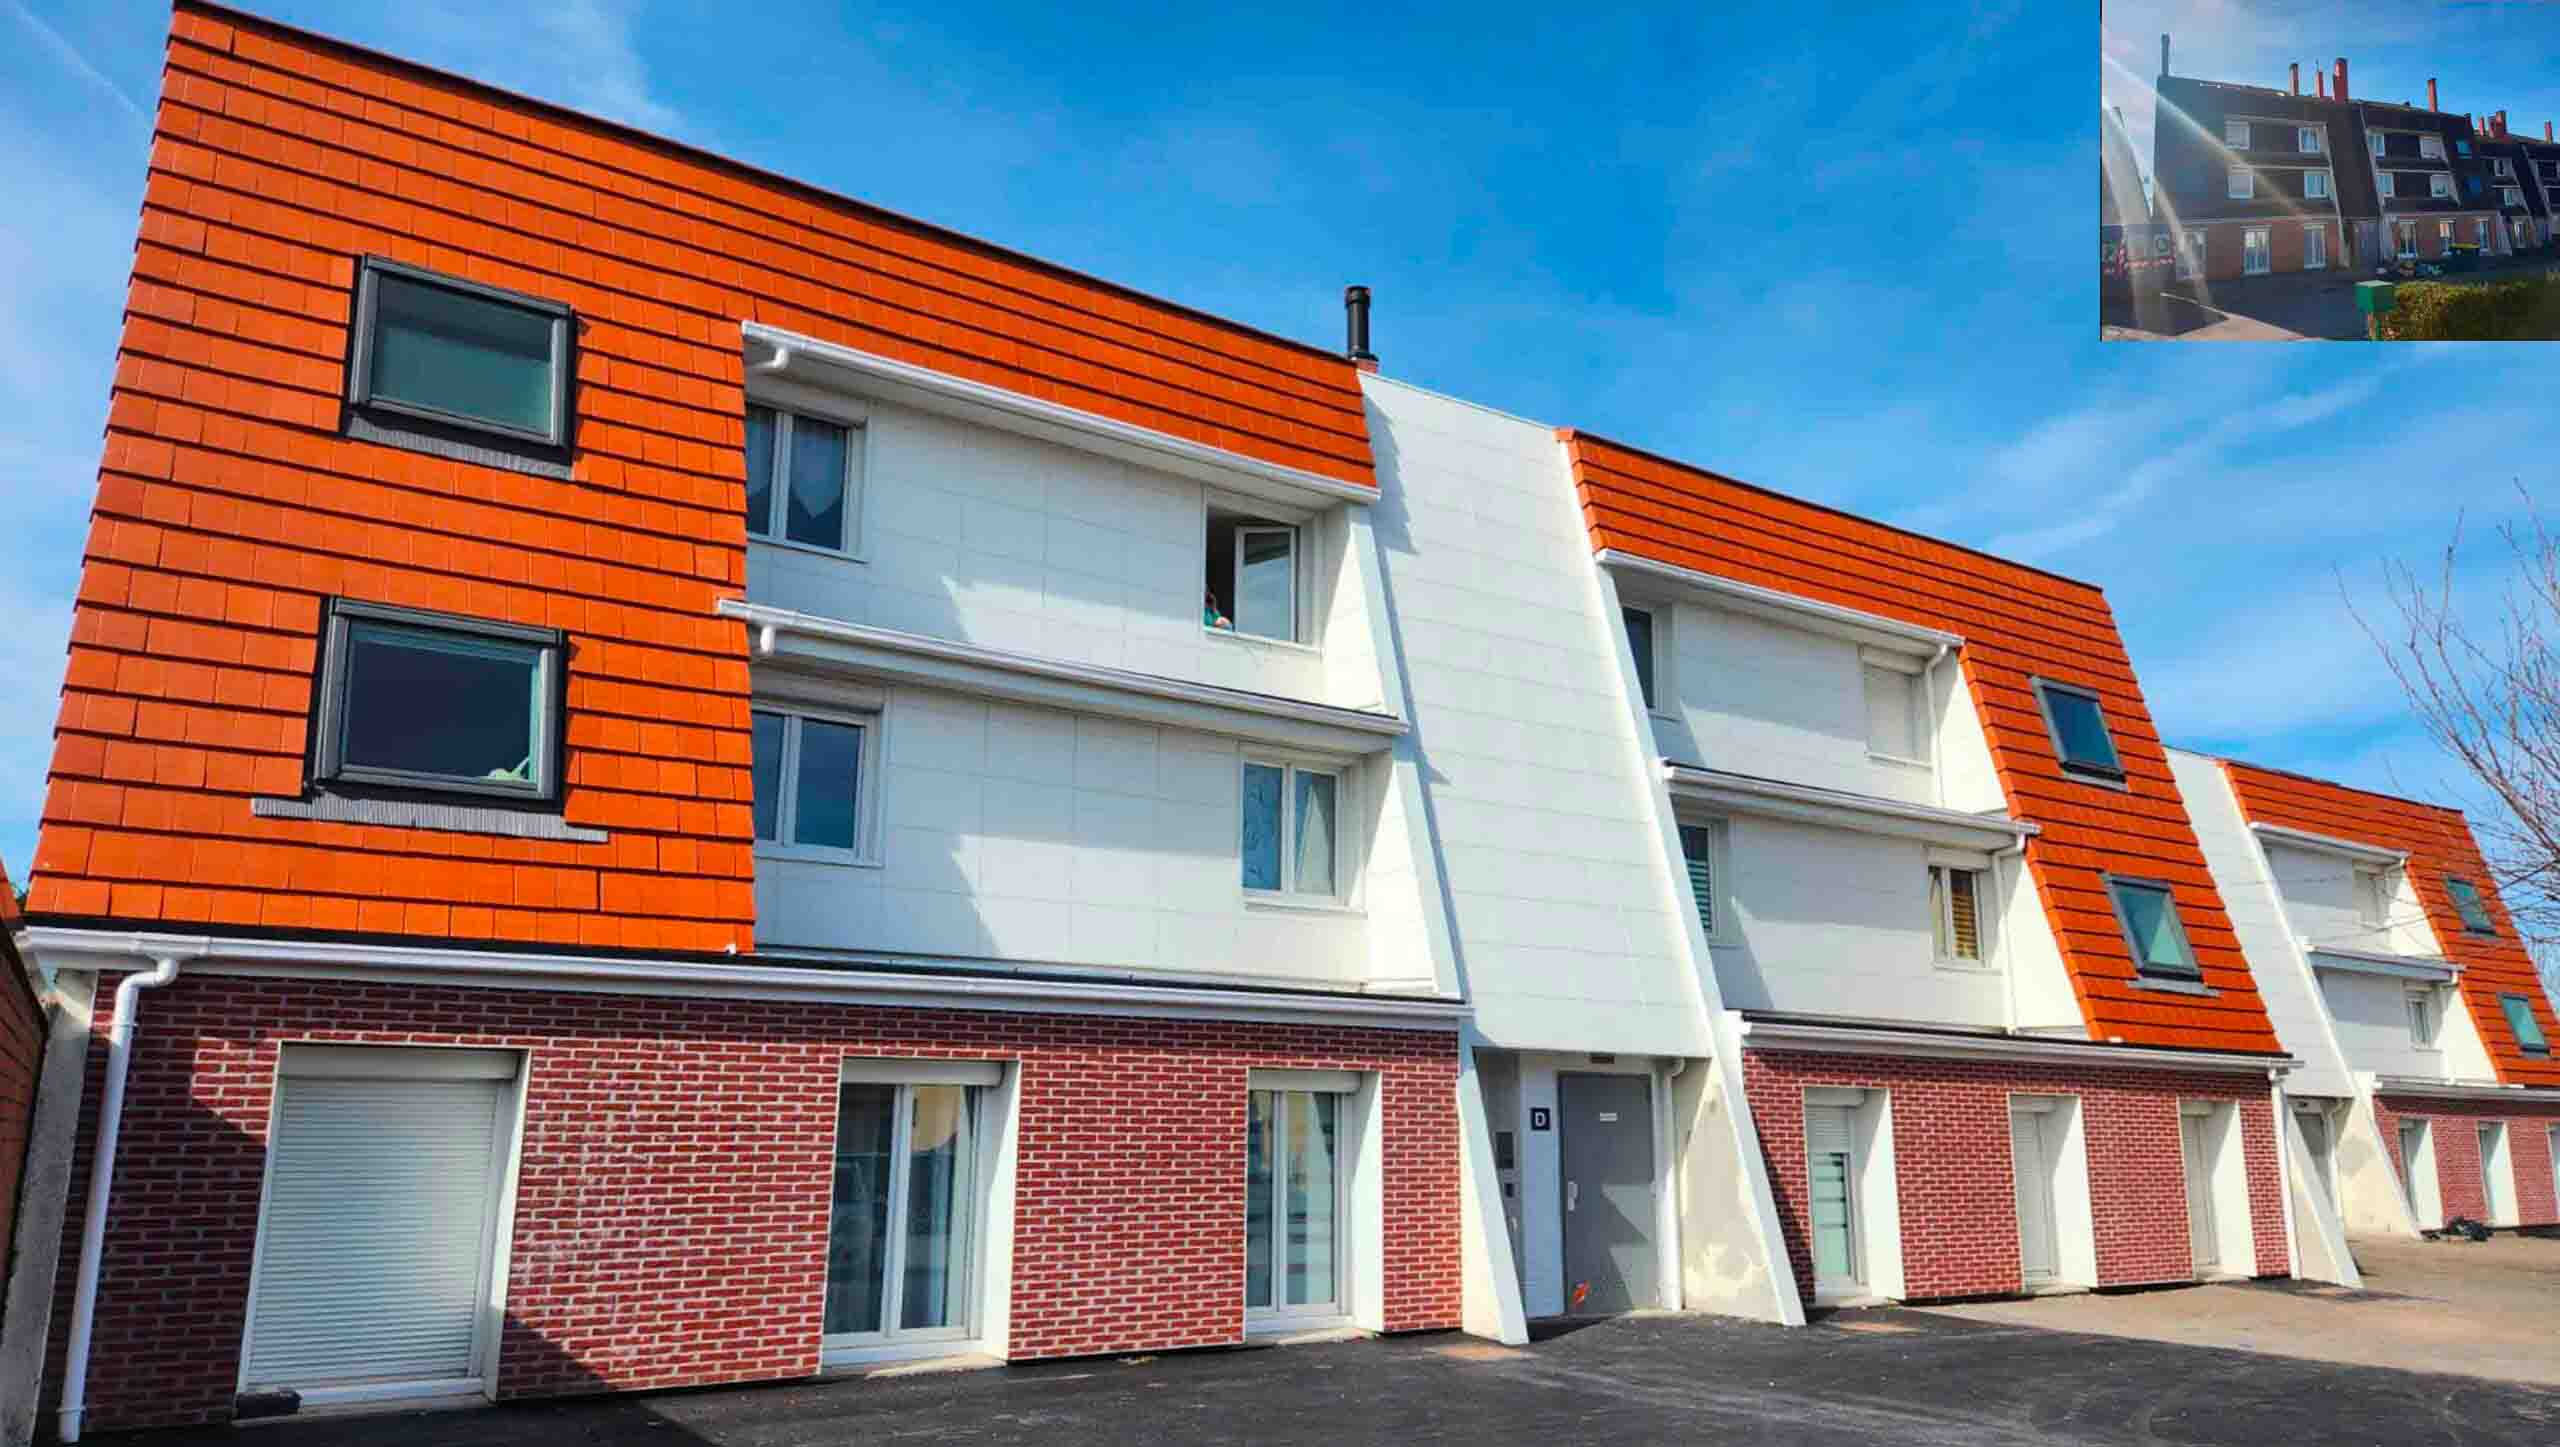 Architecte Lille - Réhabilitation de 32 logements collectifs